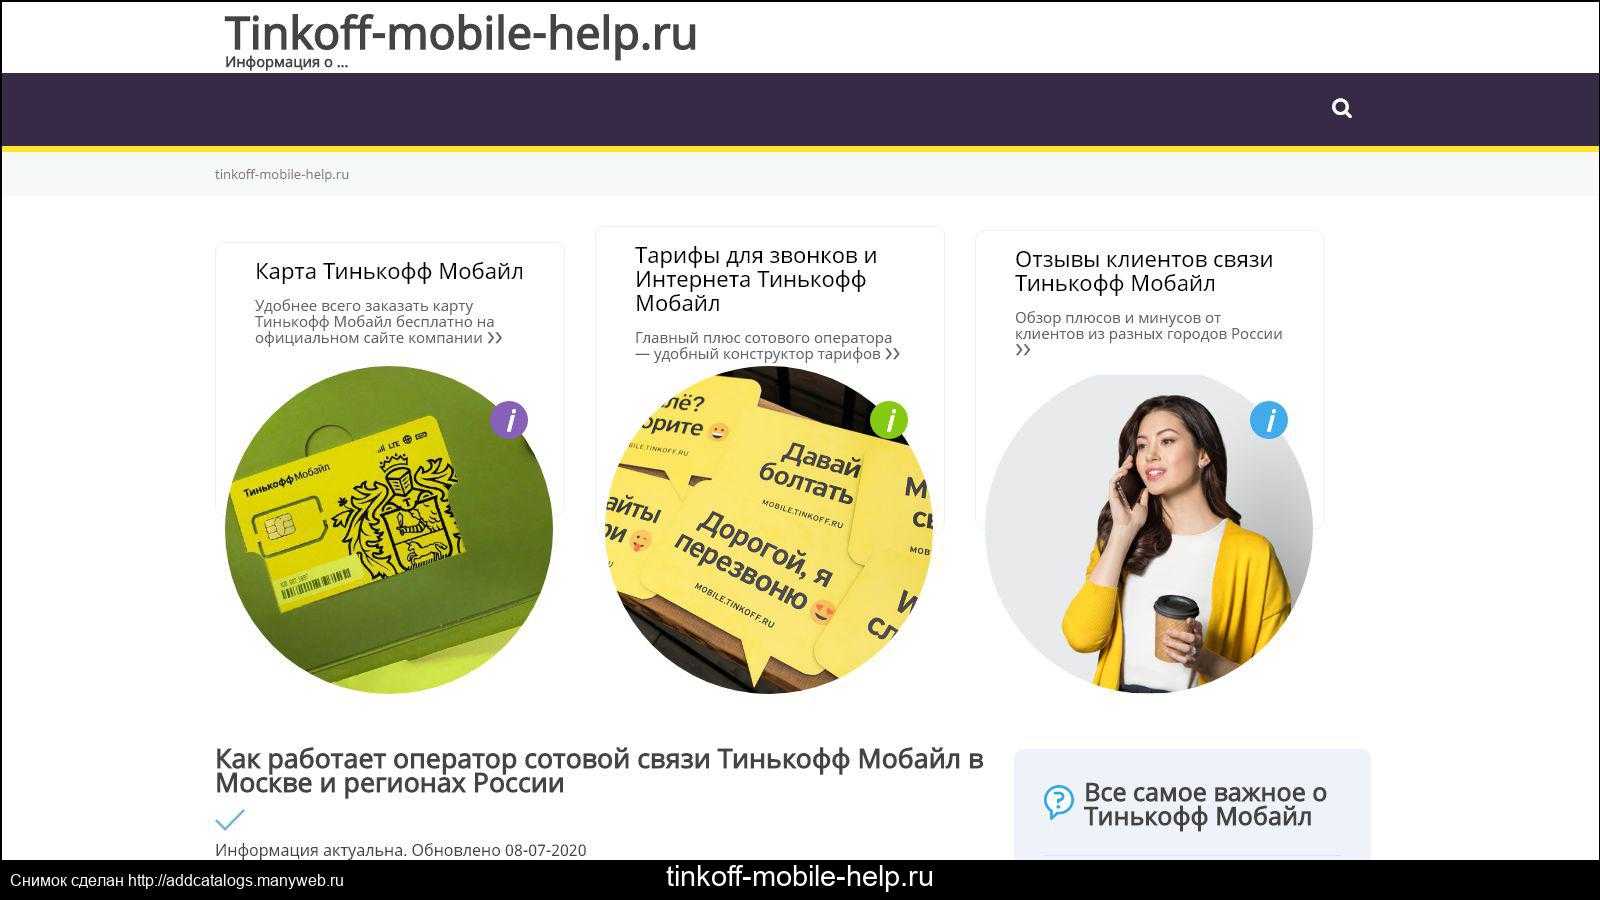 Покрытие сети тинькофф мобайл в россии: регионы присутствия